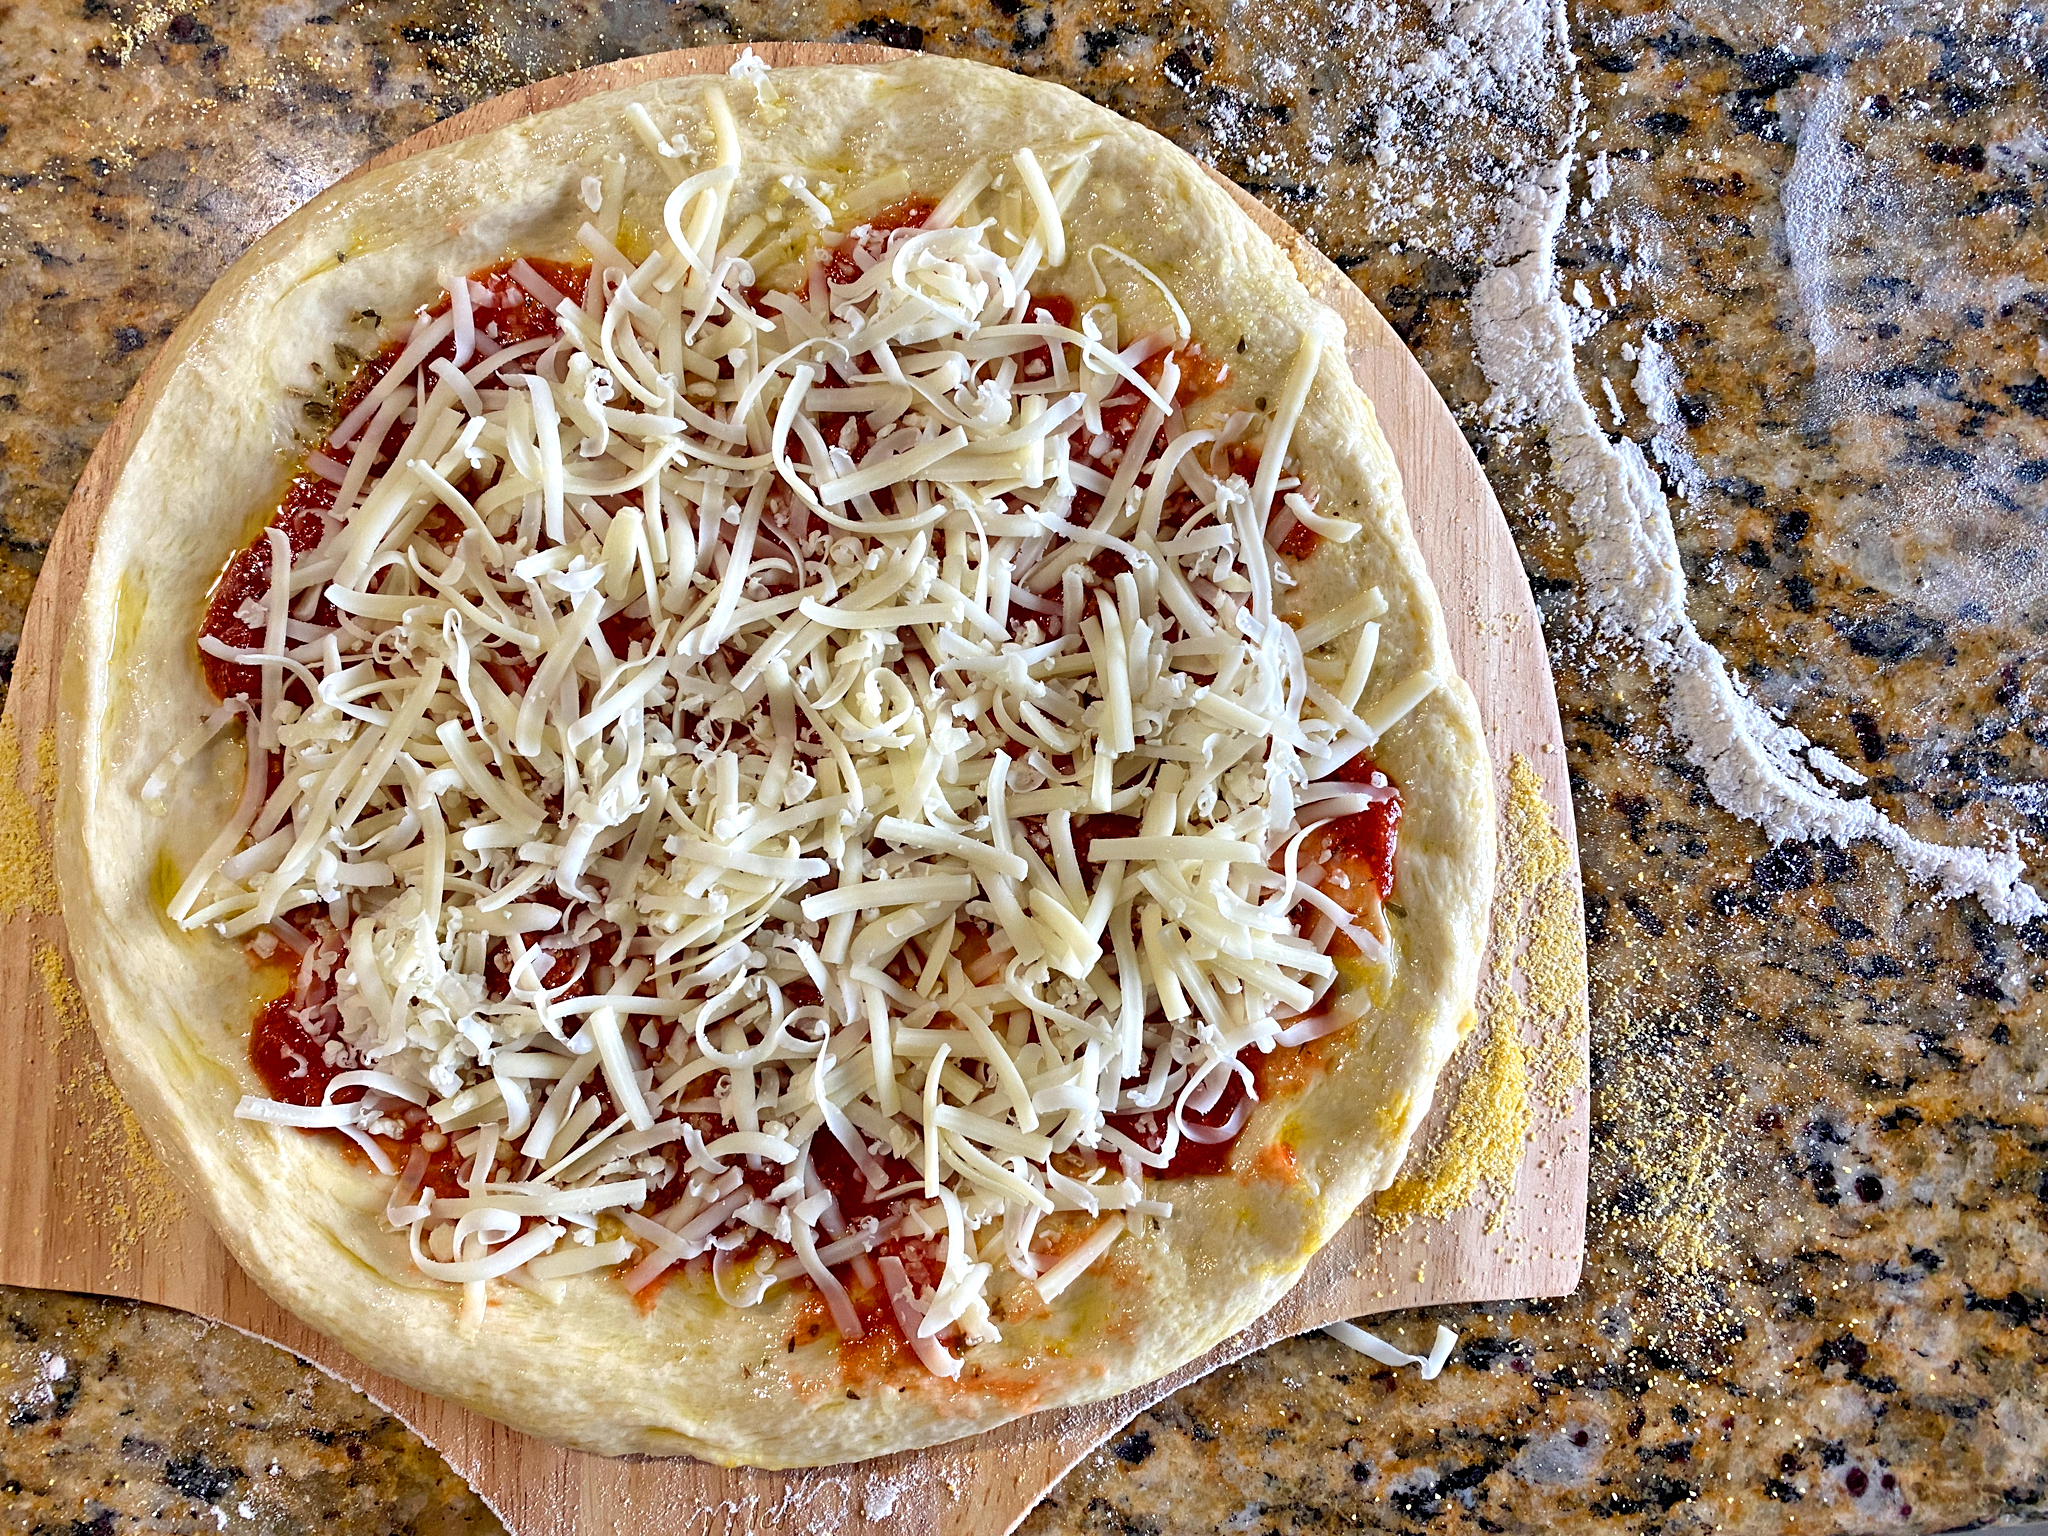 NY-style Pizza Dough Recipe